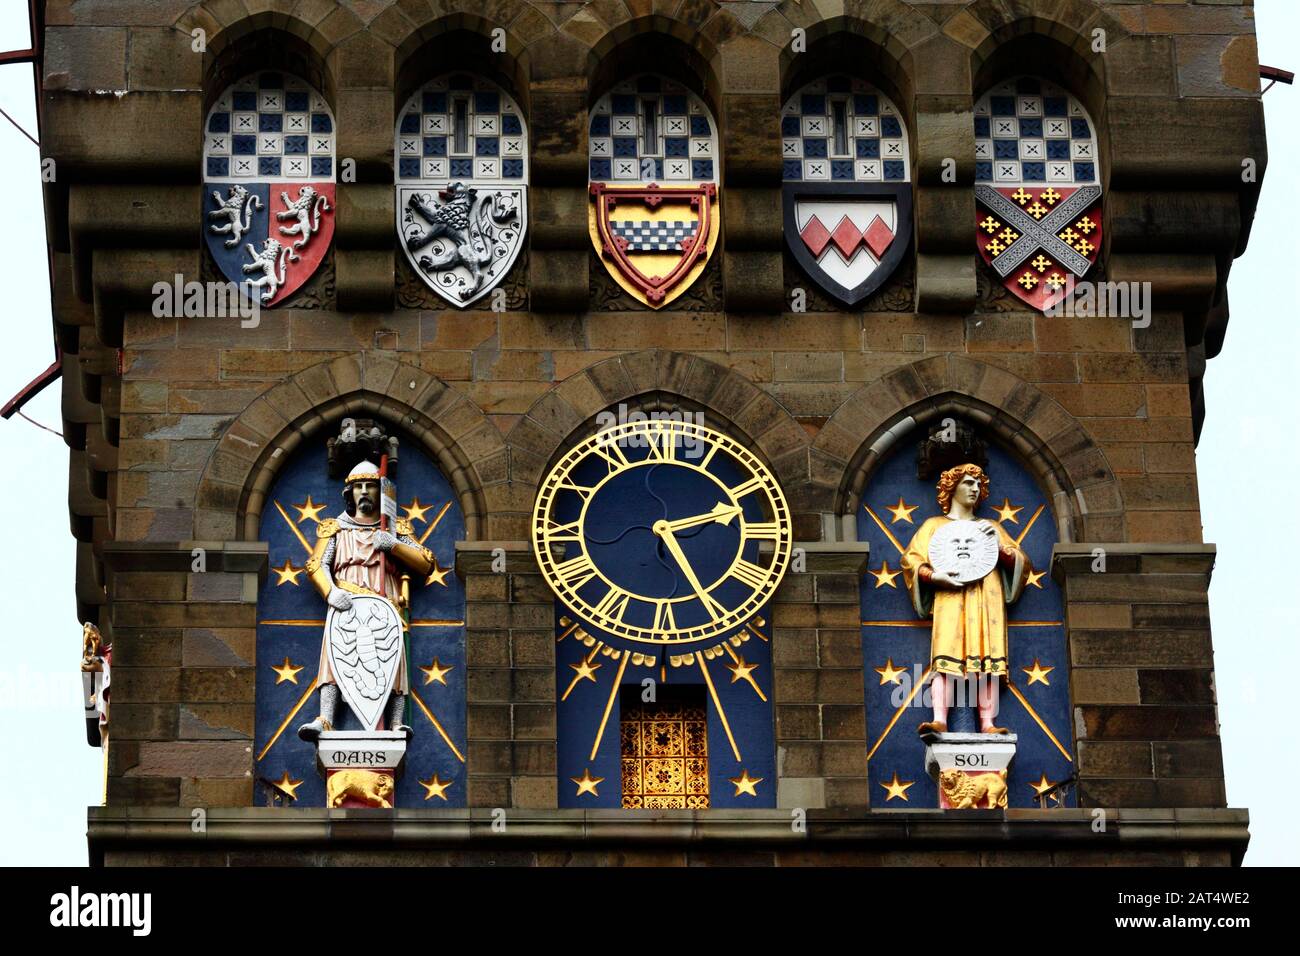 Detalle de escudos y estatuas en la torre del reloj de estilo gótico victoriano, parte del Castillo de Cardiff, Cardiff, South Glamourgan, Gales, Reino Unido Foto de stock